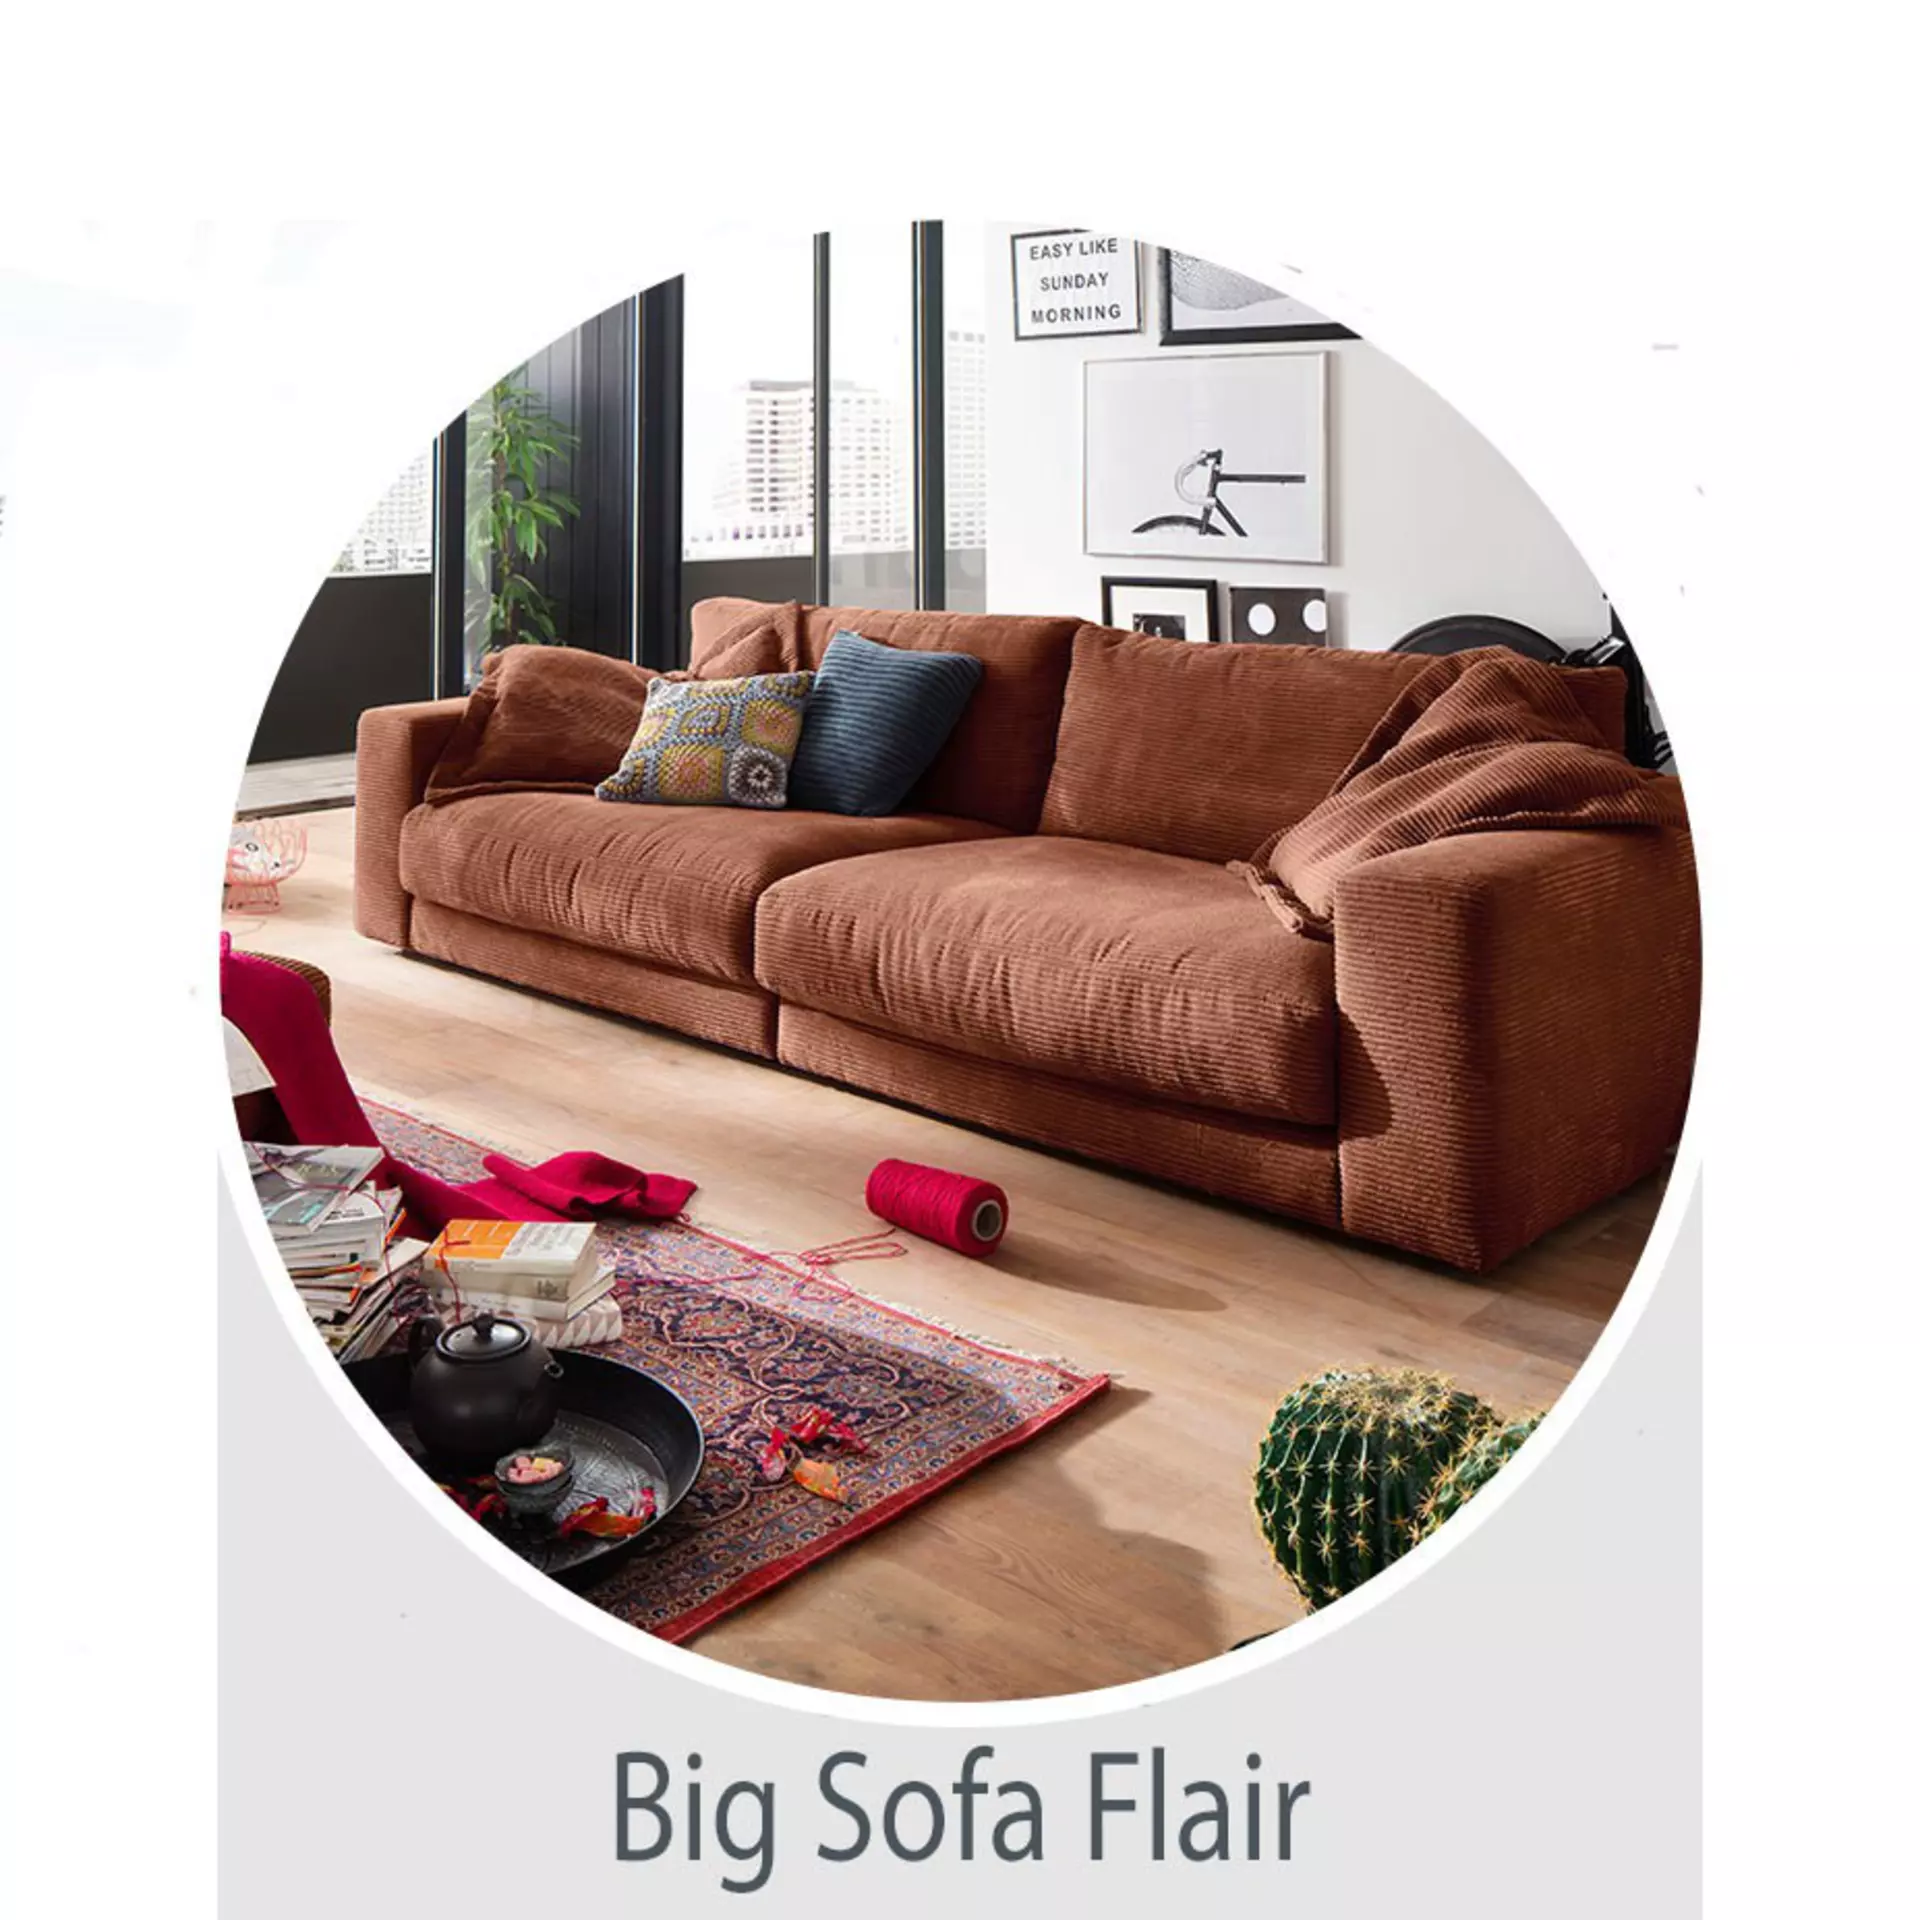 Big Sofa Flair - weitere Vorschläge